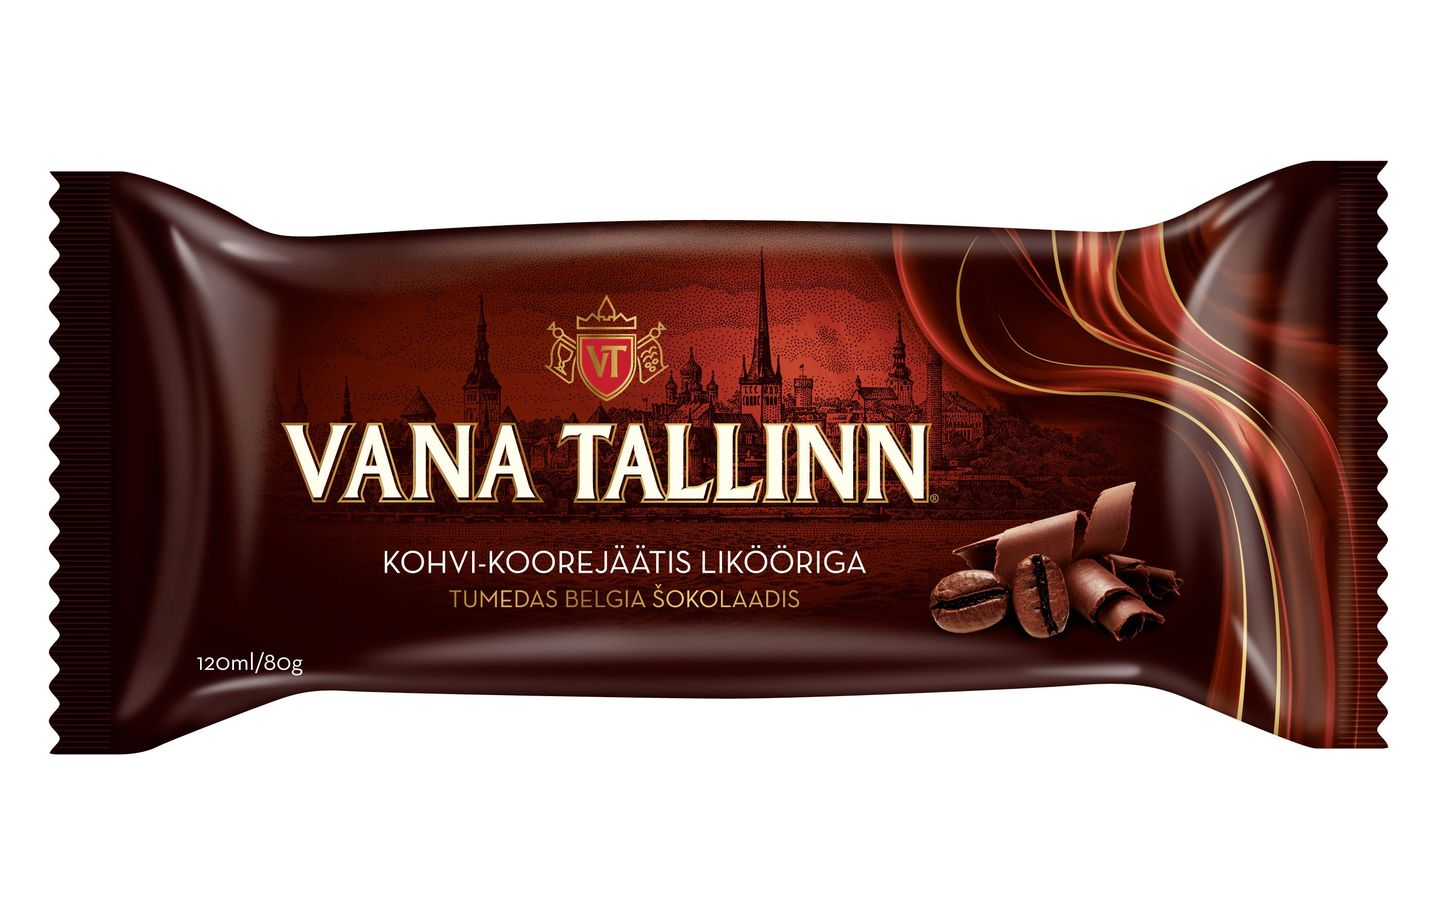 Balbiino uudistoode sisaldab 2,5-protsendilist Vana Tallinna kontsentraati, mis jäätisesse jätab alkoholi sisalduseks 0,5 protsenti.